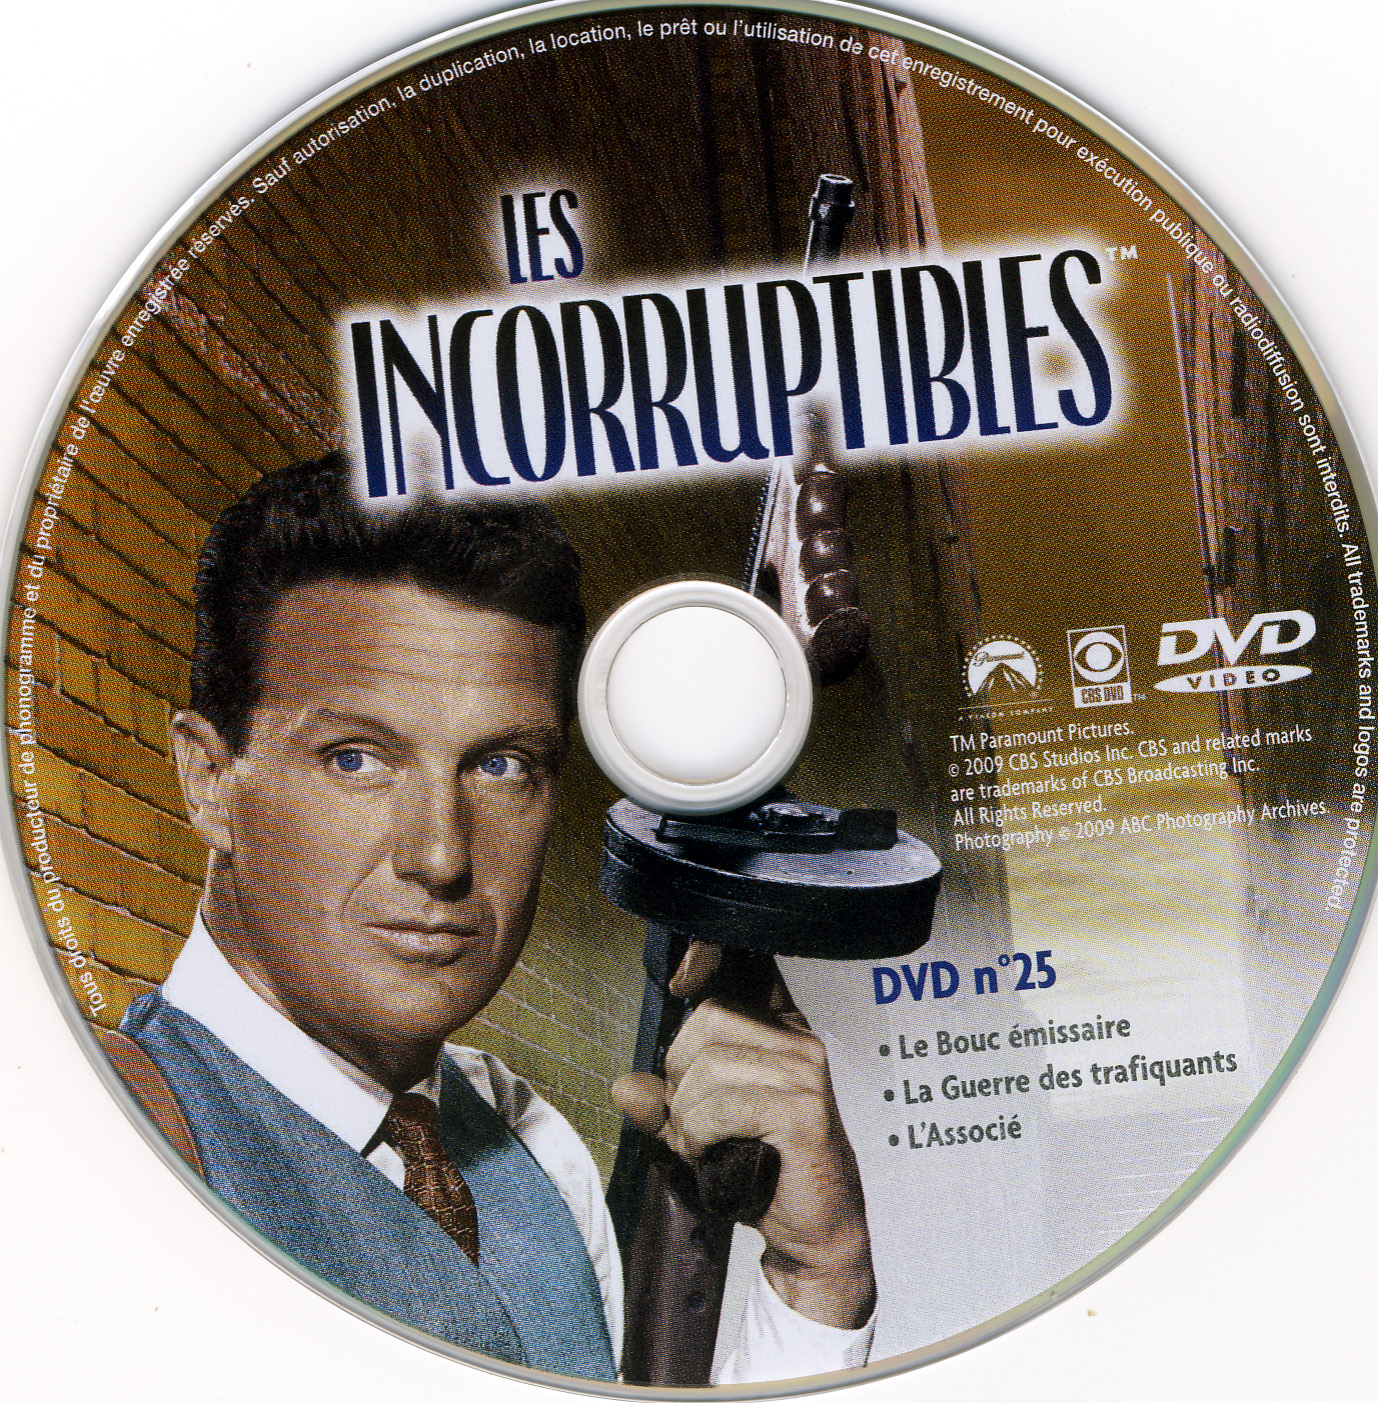 Les incorruptibles intgrale DVD 25